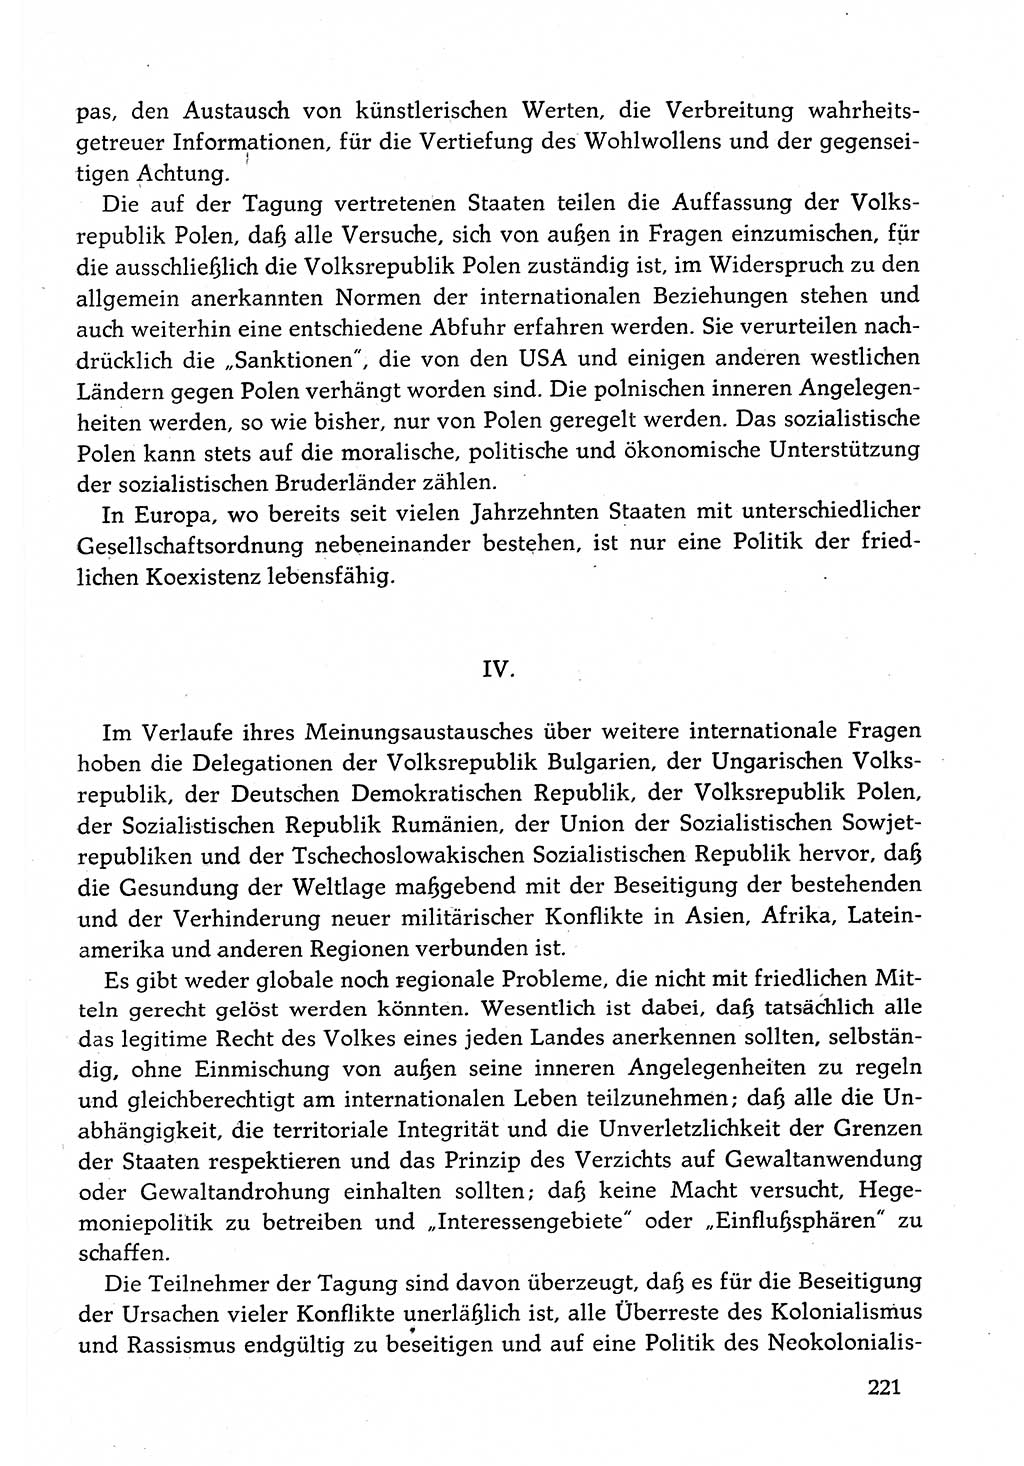 Dokumente der Sozialistischen Einheitspartei Deutschlands (SED) [Deutsche Demokratische Republik (DDR)] 1982-1983, Seite 221 (Dok. SED DDR 1982-1983, S. 221)